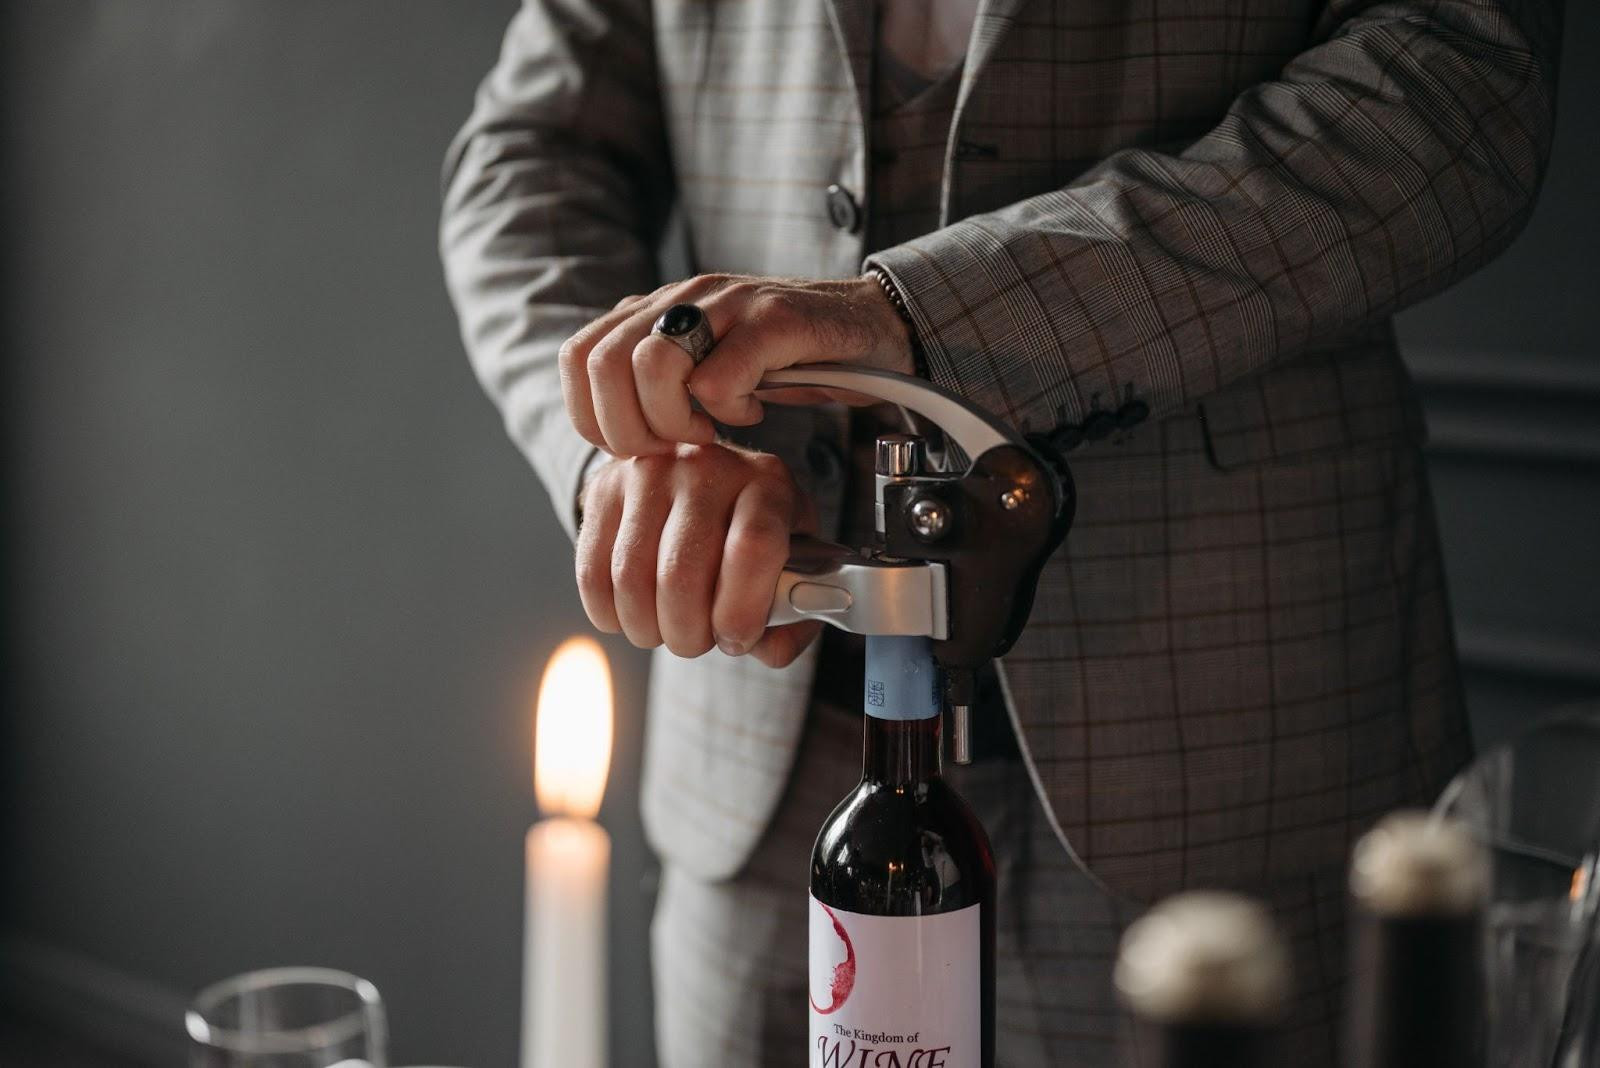 Штопор — корисний подарунок для поціновувачів виноградних напоїв - зображення